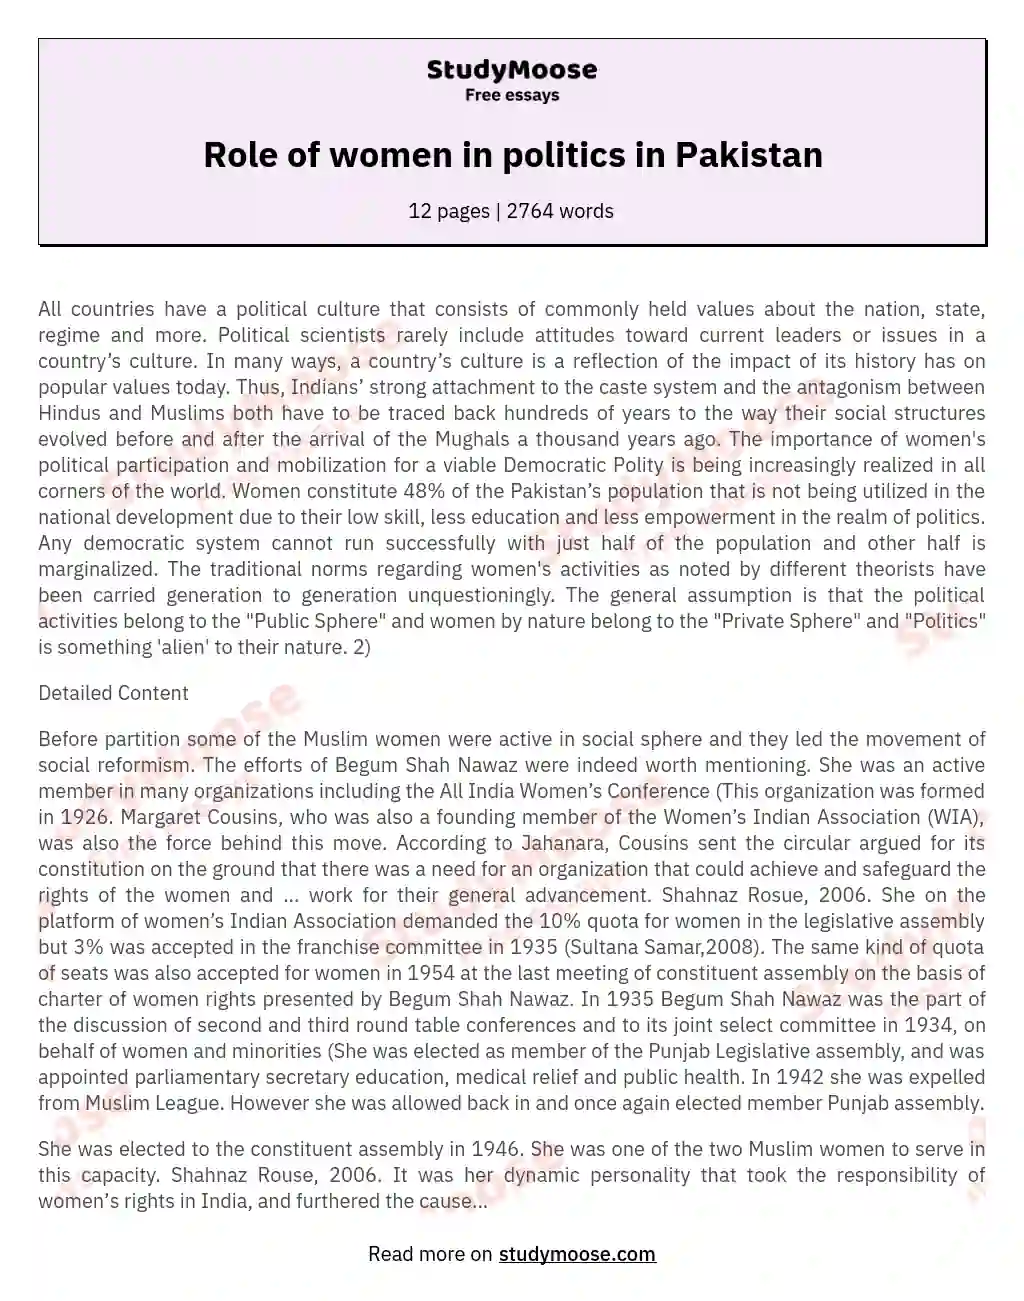 Role of women in politics in Pakistan essay